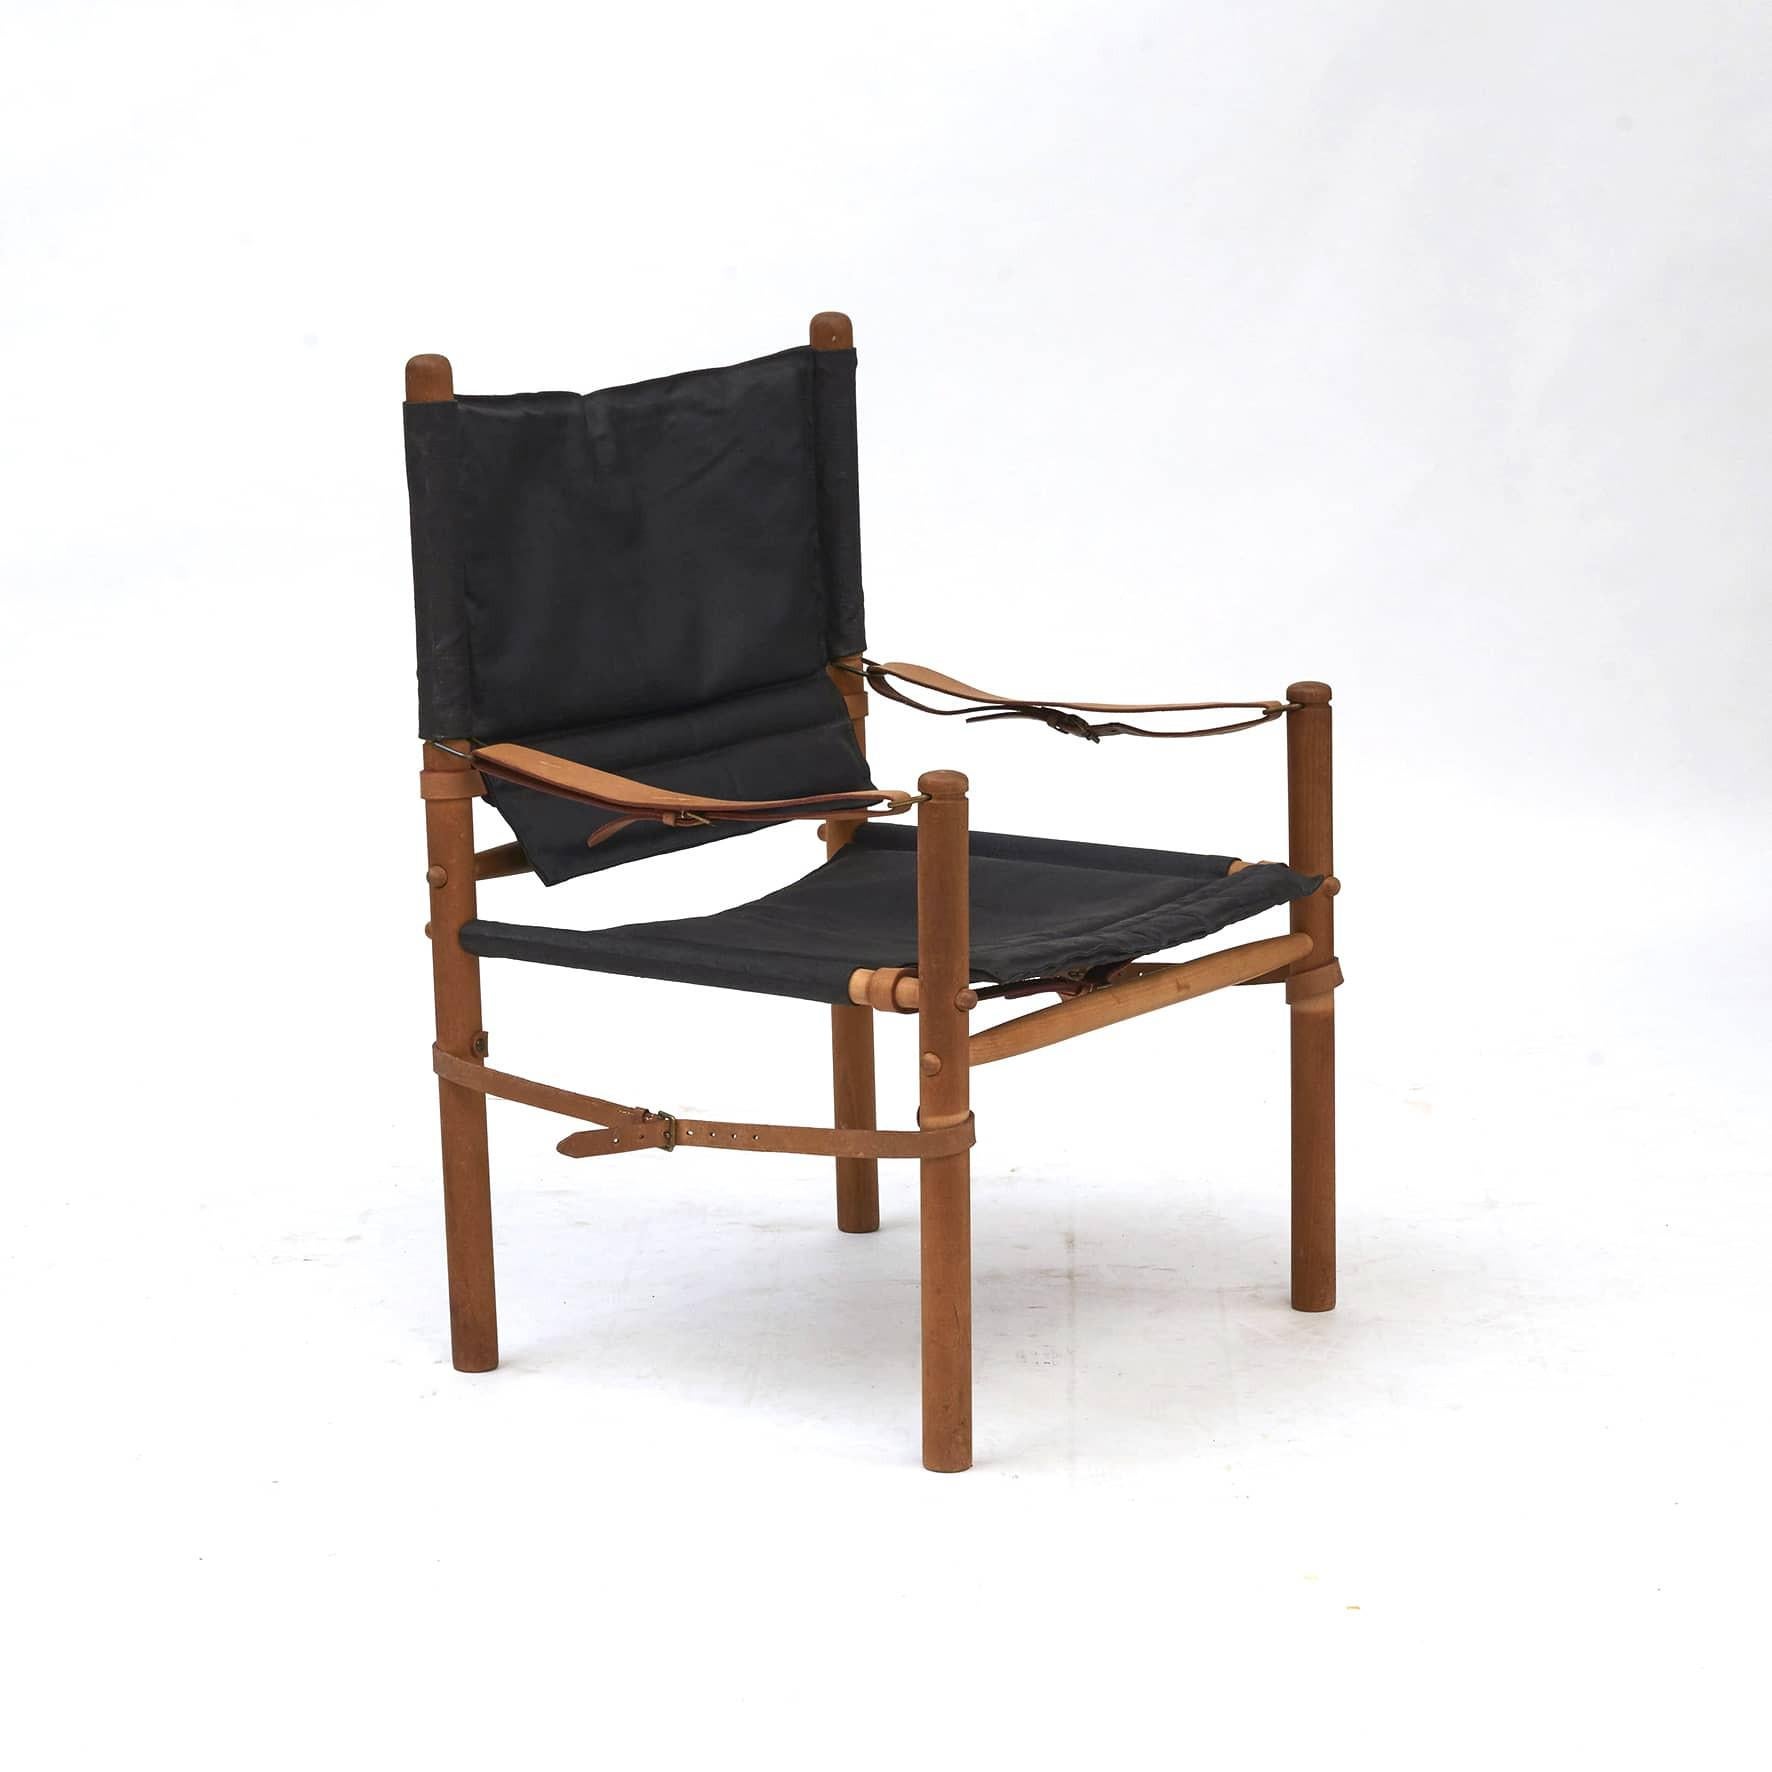 Paire de chaises Oasis Safari conçues par Axel Thygesen pour Interna, c.1965.
Conçue et fabriquée dans les années 1960.
Cadre en Beeche avec assise en toile noire.

Inchangé en bon état d'origine.
Vendu par paire.
  